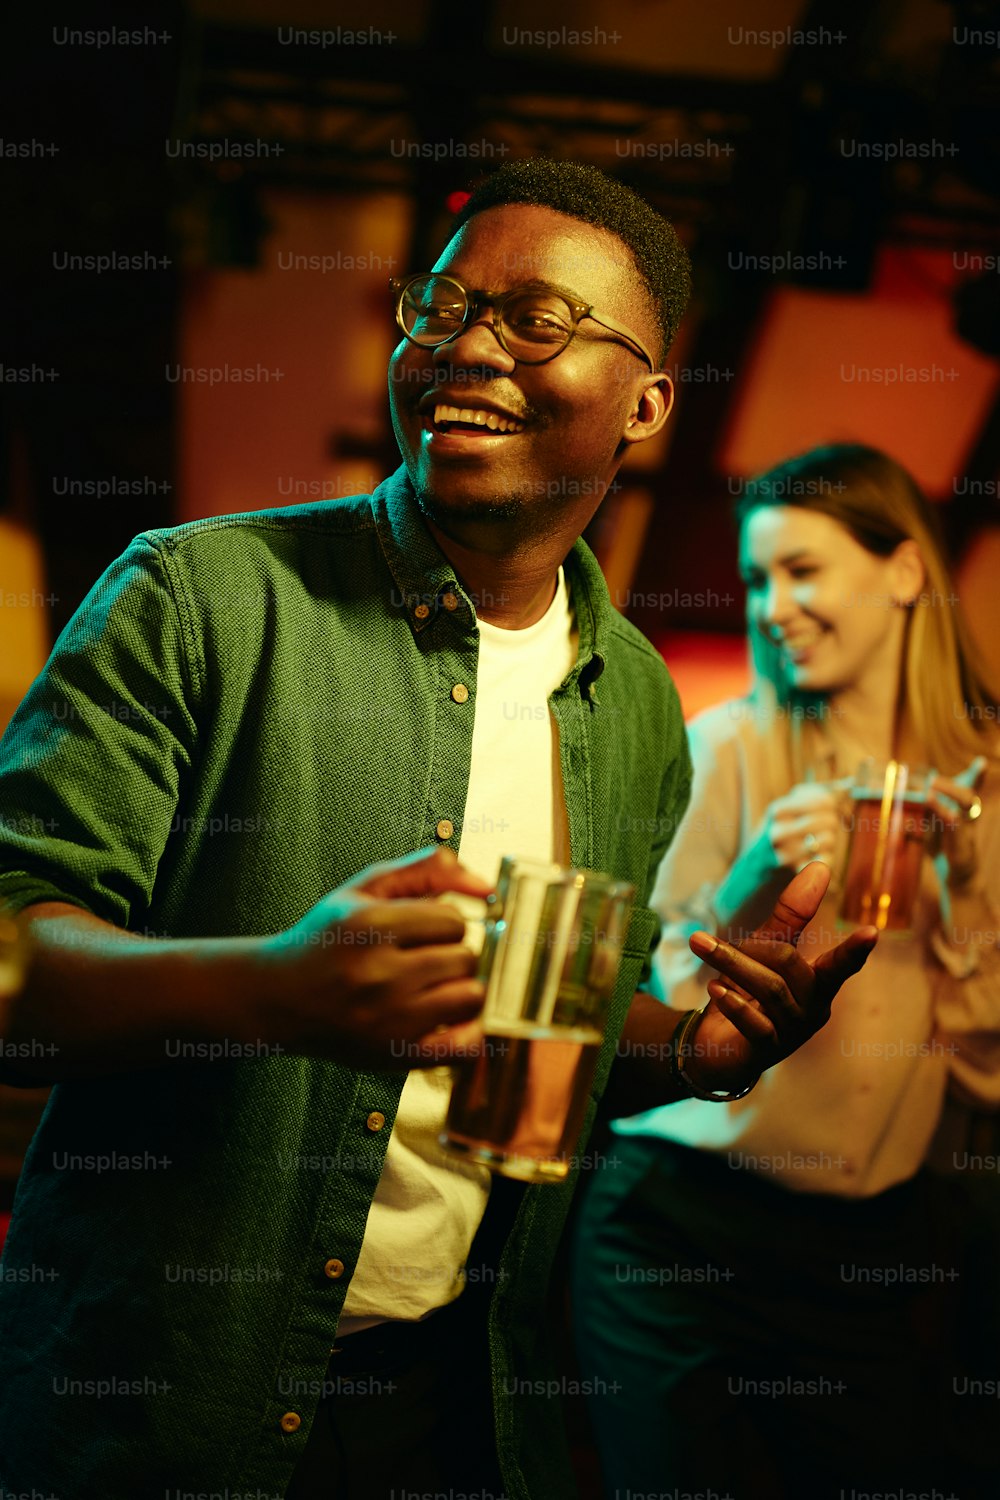 Uomo nero felice che beve birra e balla durante la notte in un bar.